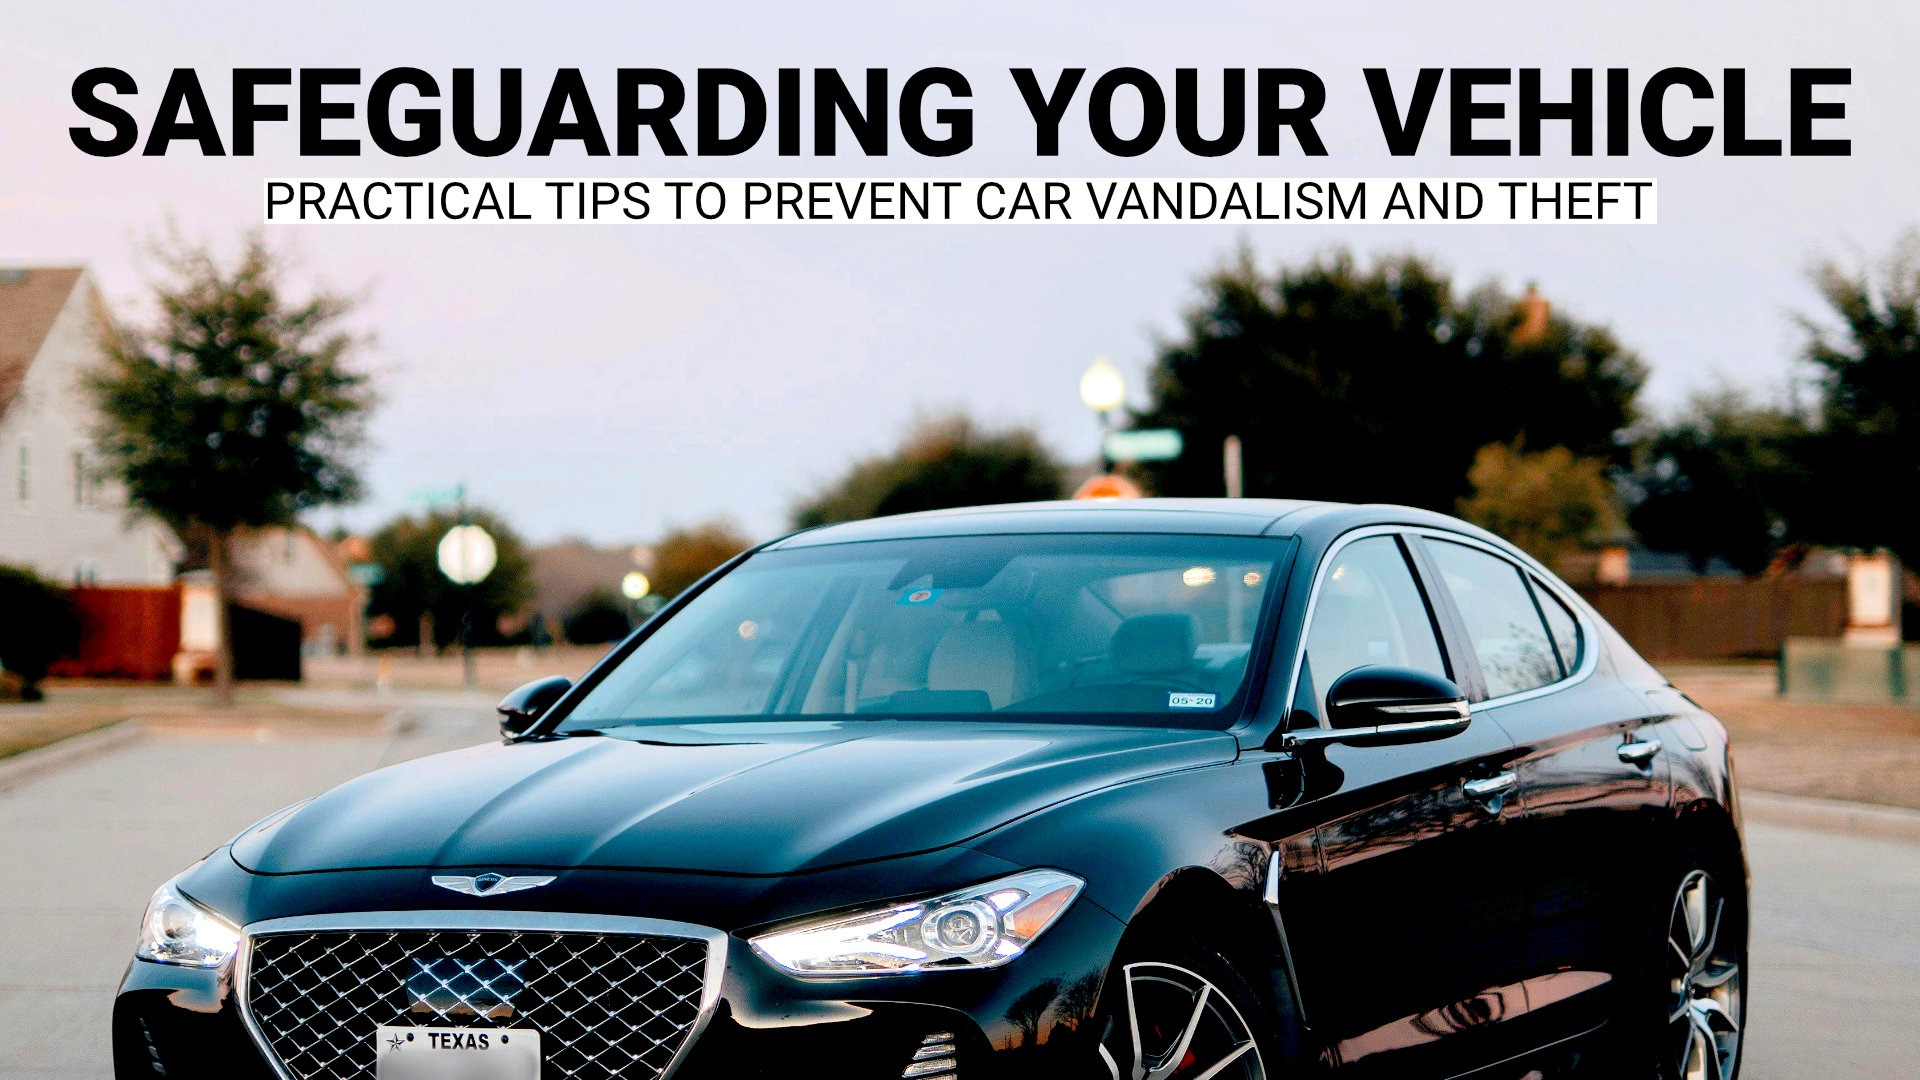 Schützen Sie Ihr Fahrzeug: Praktische Tipps zur Verhinderung von Vandalismus und Diebstahl am Auto